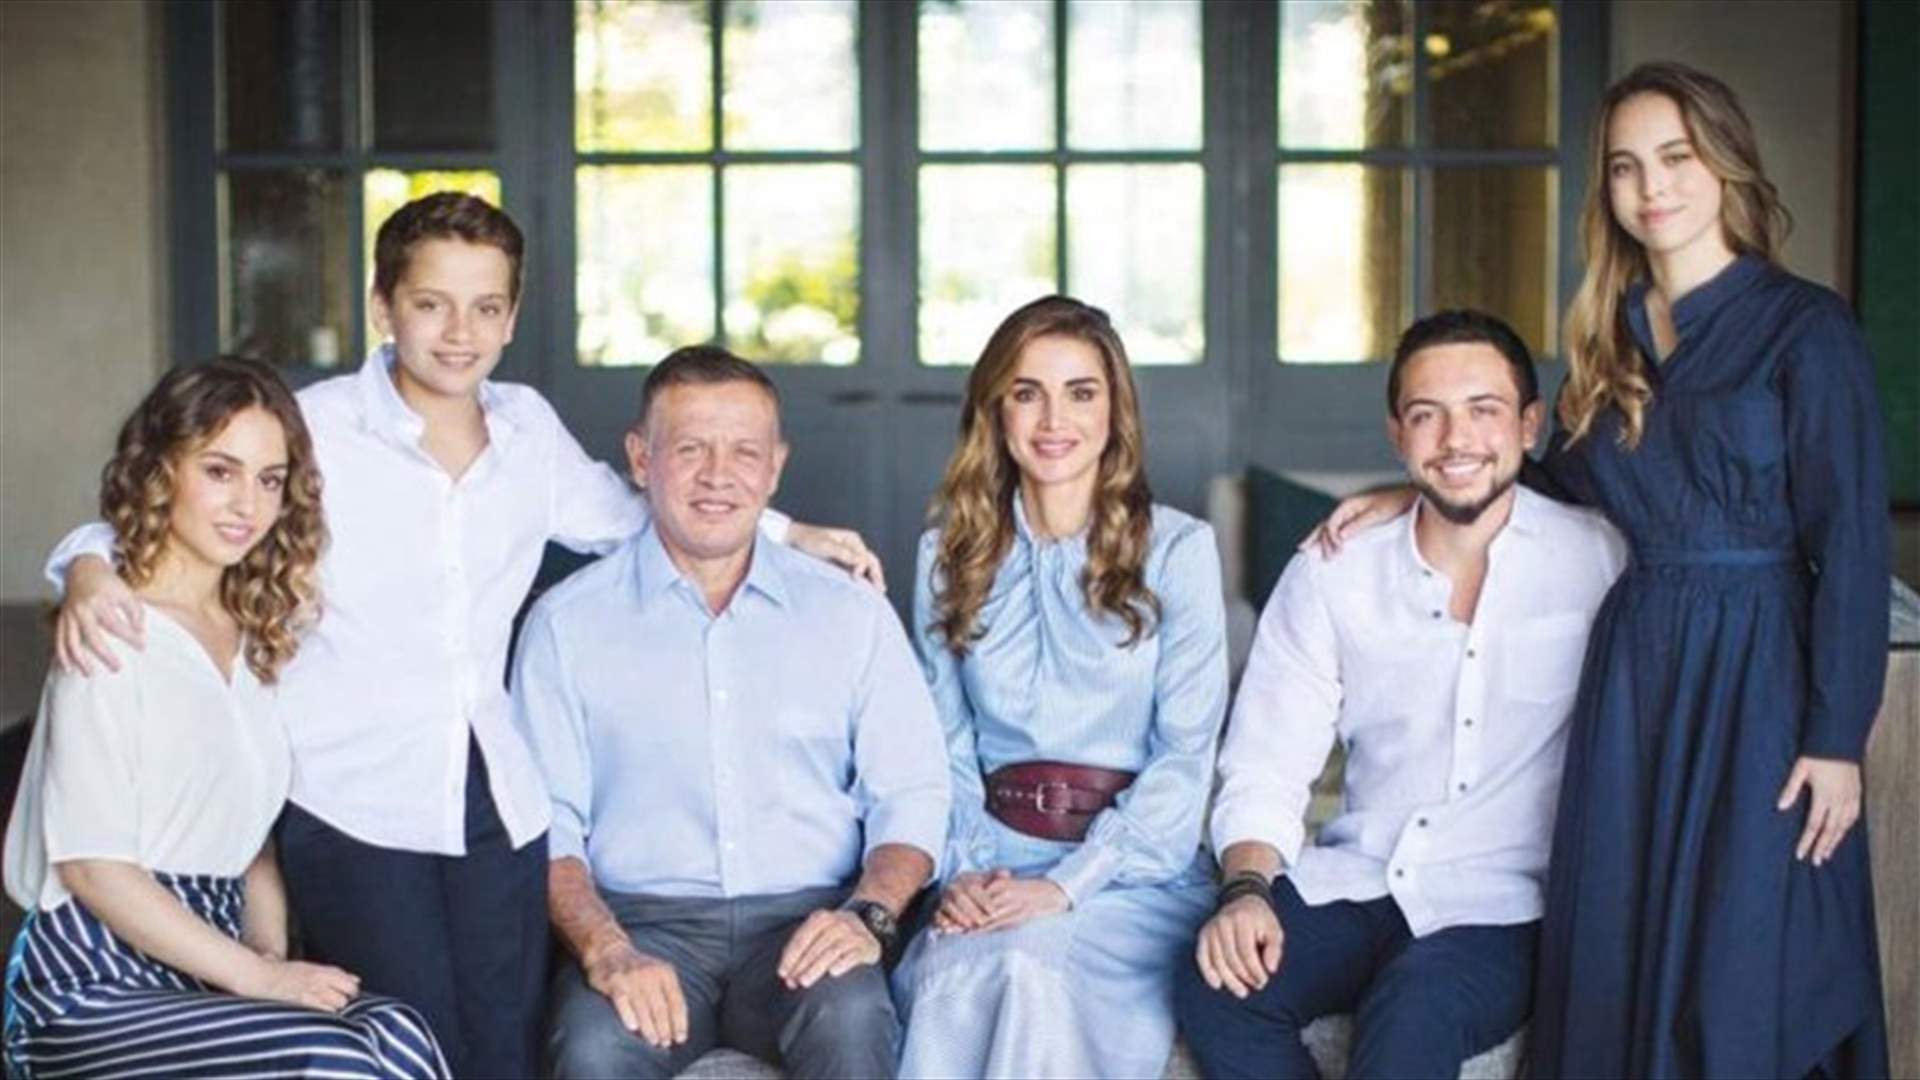 ارتدوا جميعاً اللون الأبيض...صورة مميزة للعائلة الملكية الأردنية بمناسبة اقتراب السنة الجديدة